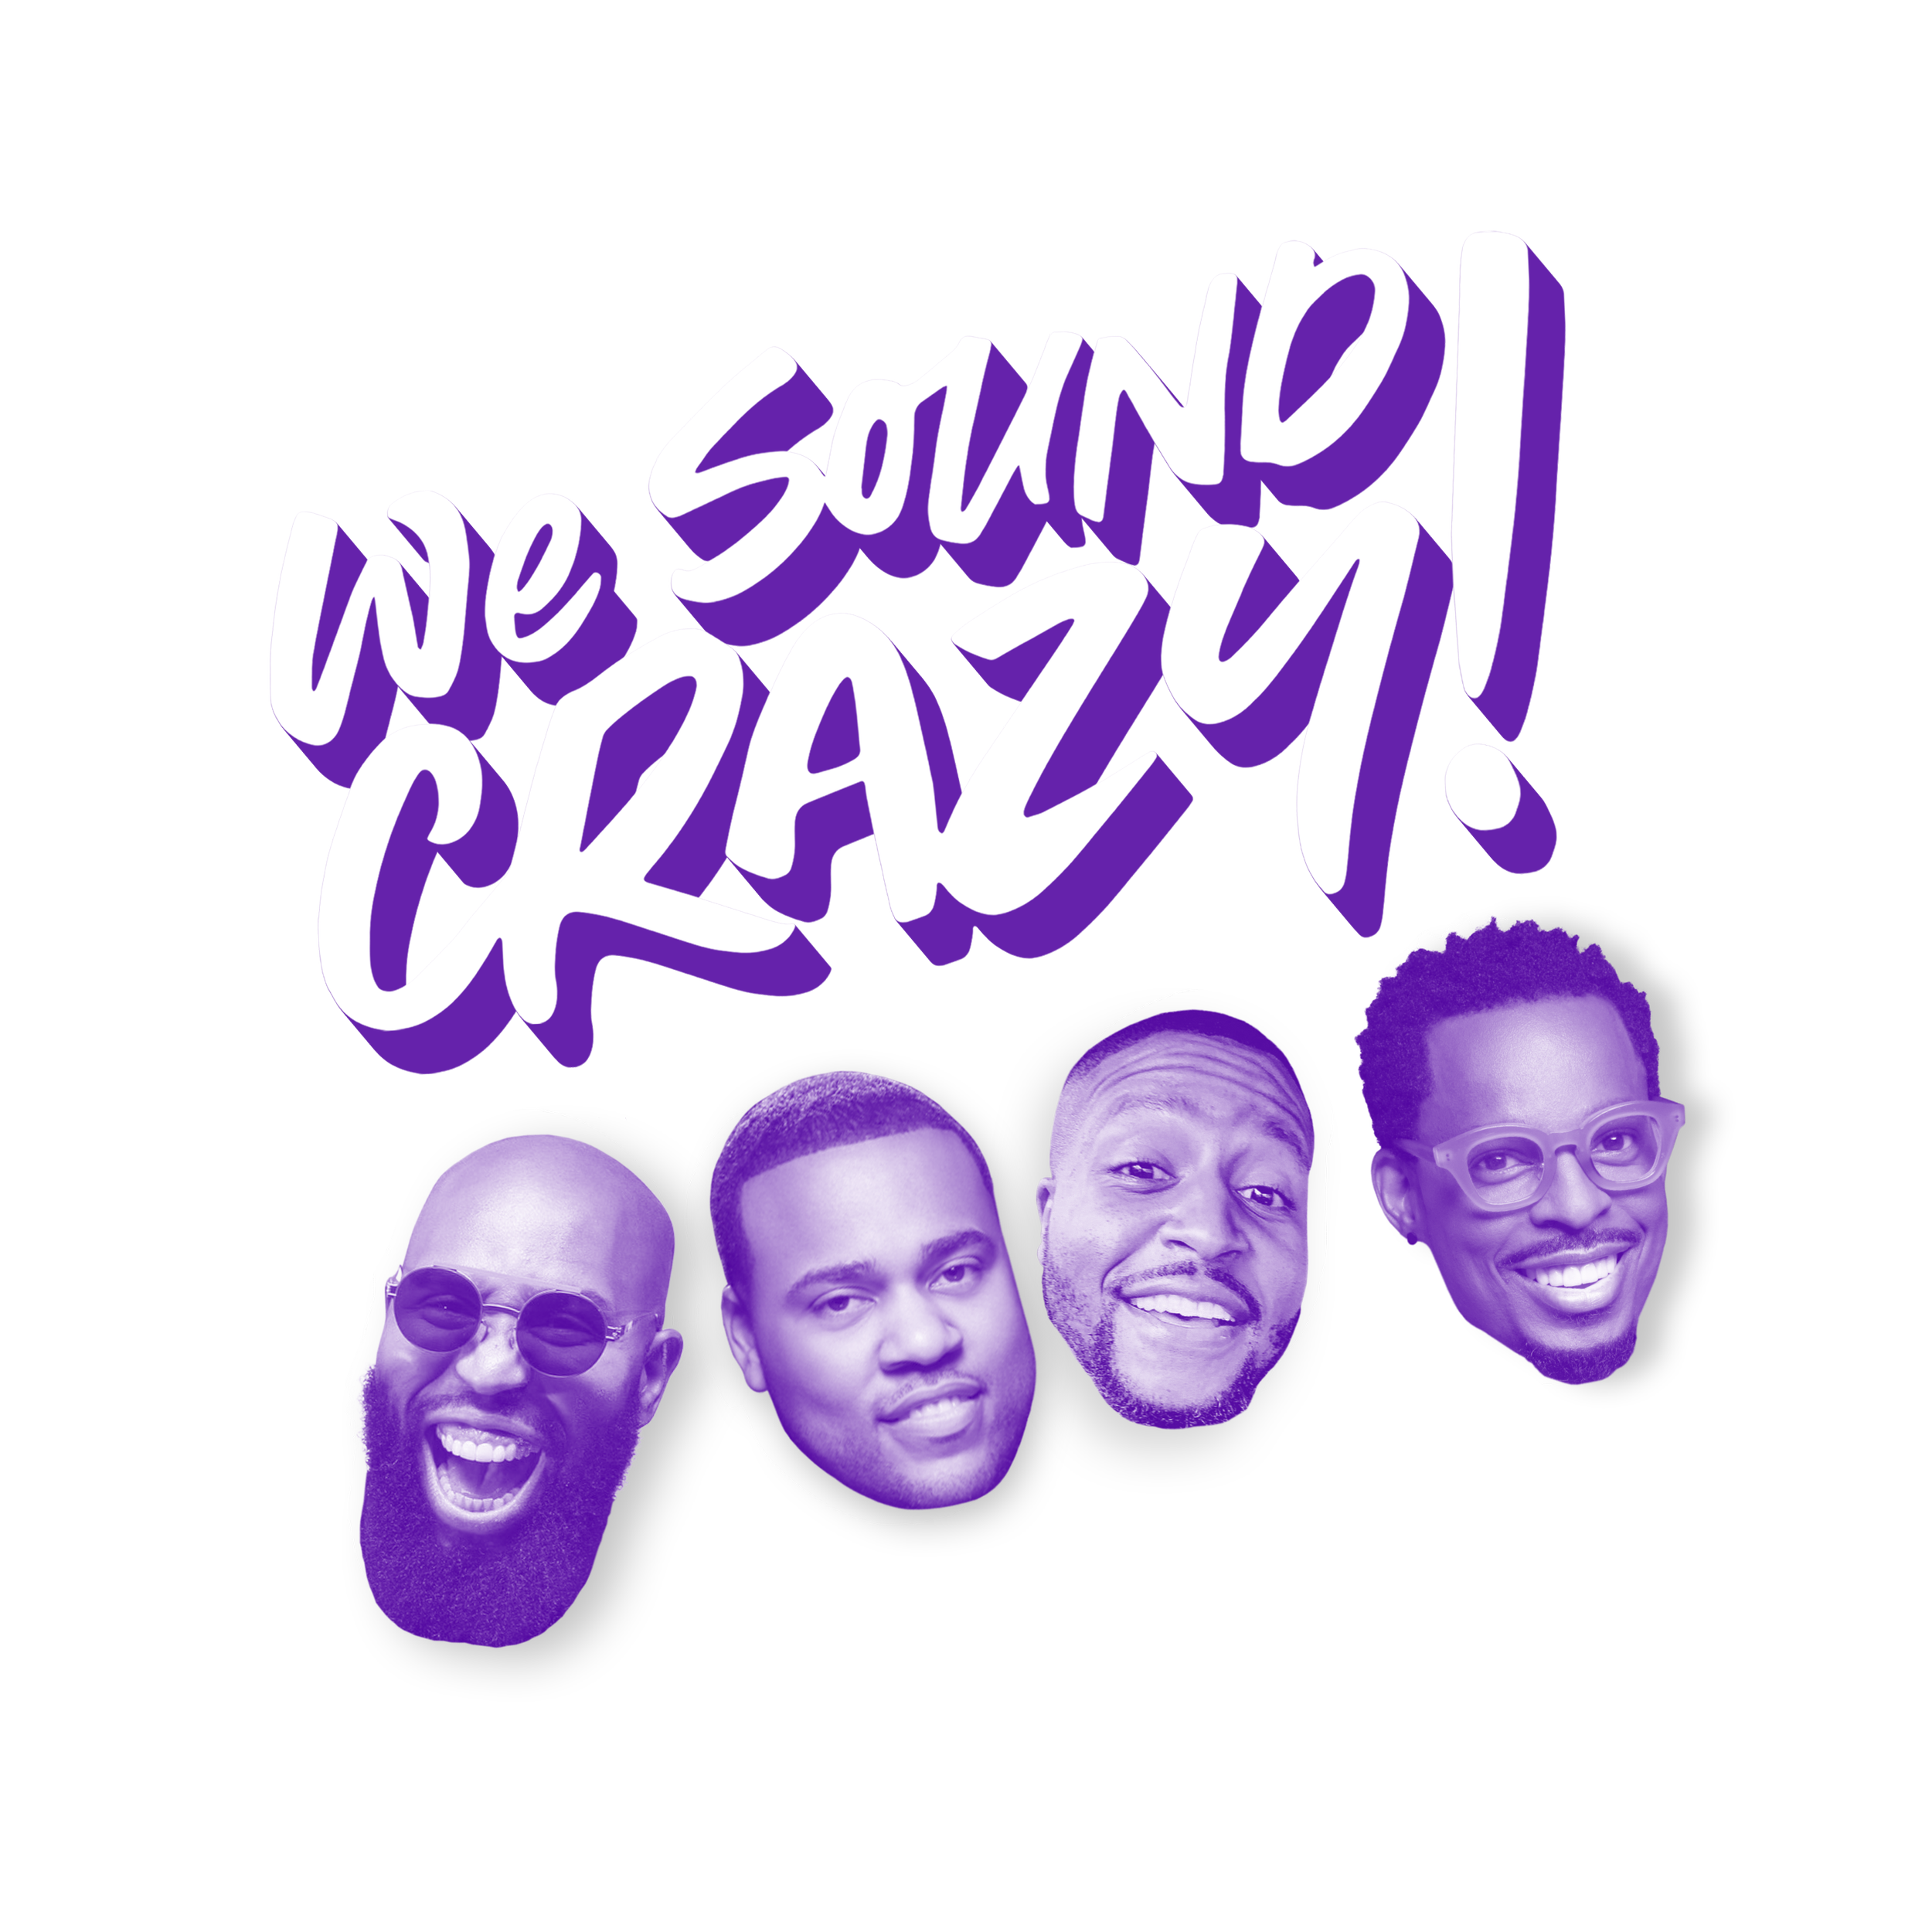 We Sound Crazy